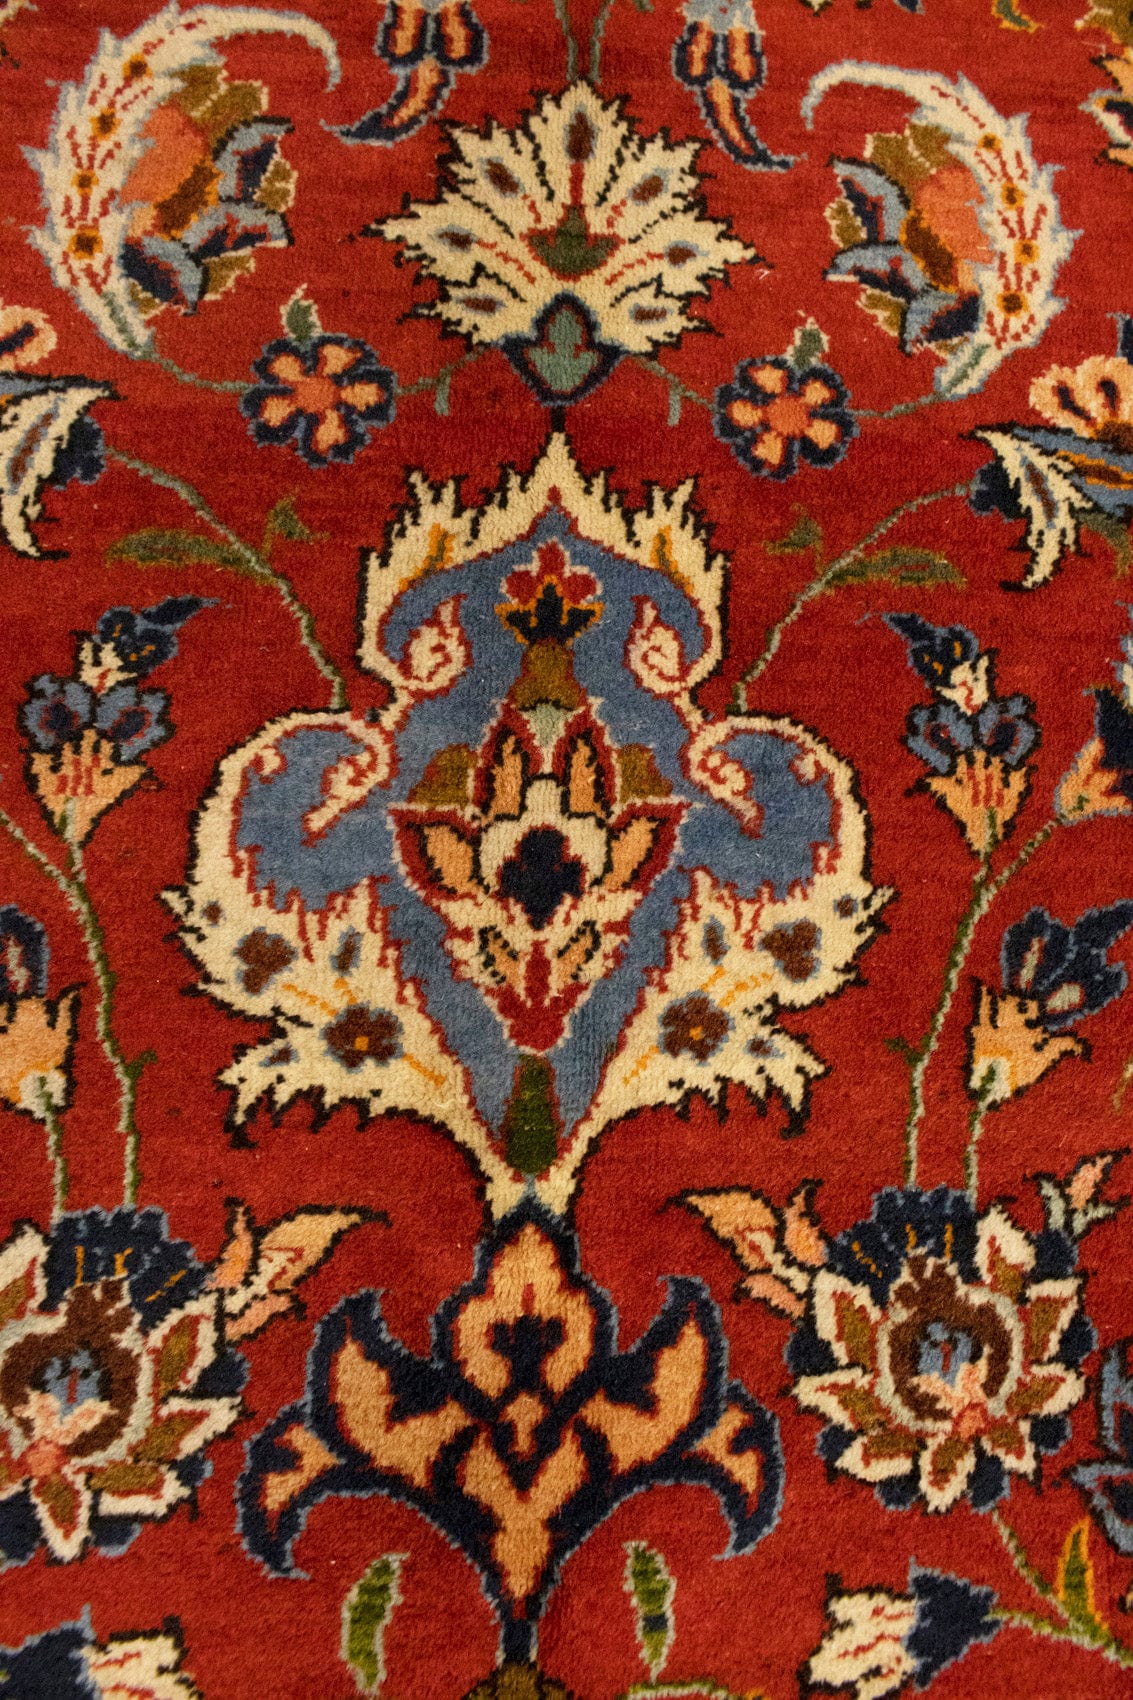 Semi Antique Orange-red Classic 9X13 Najafabad Persian Rug